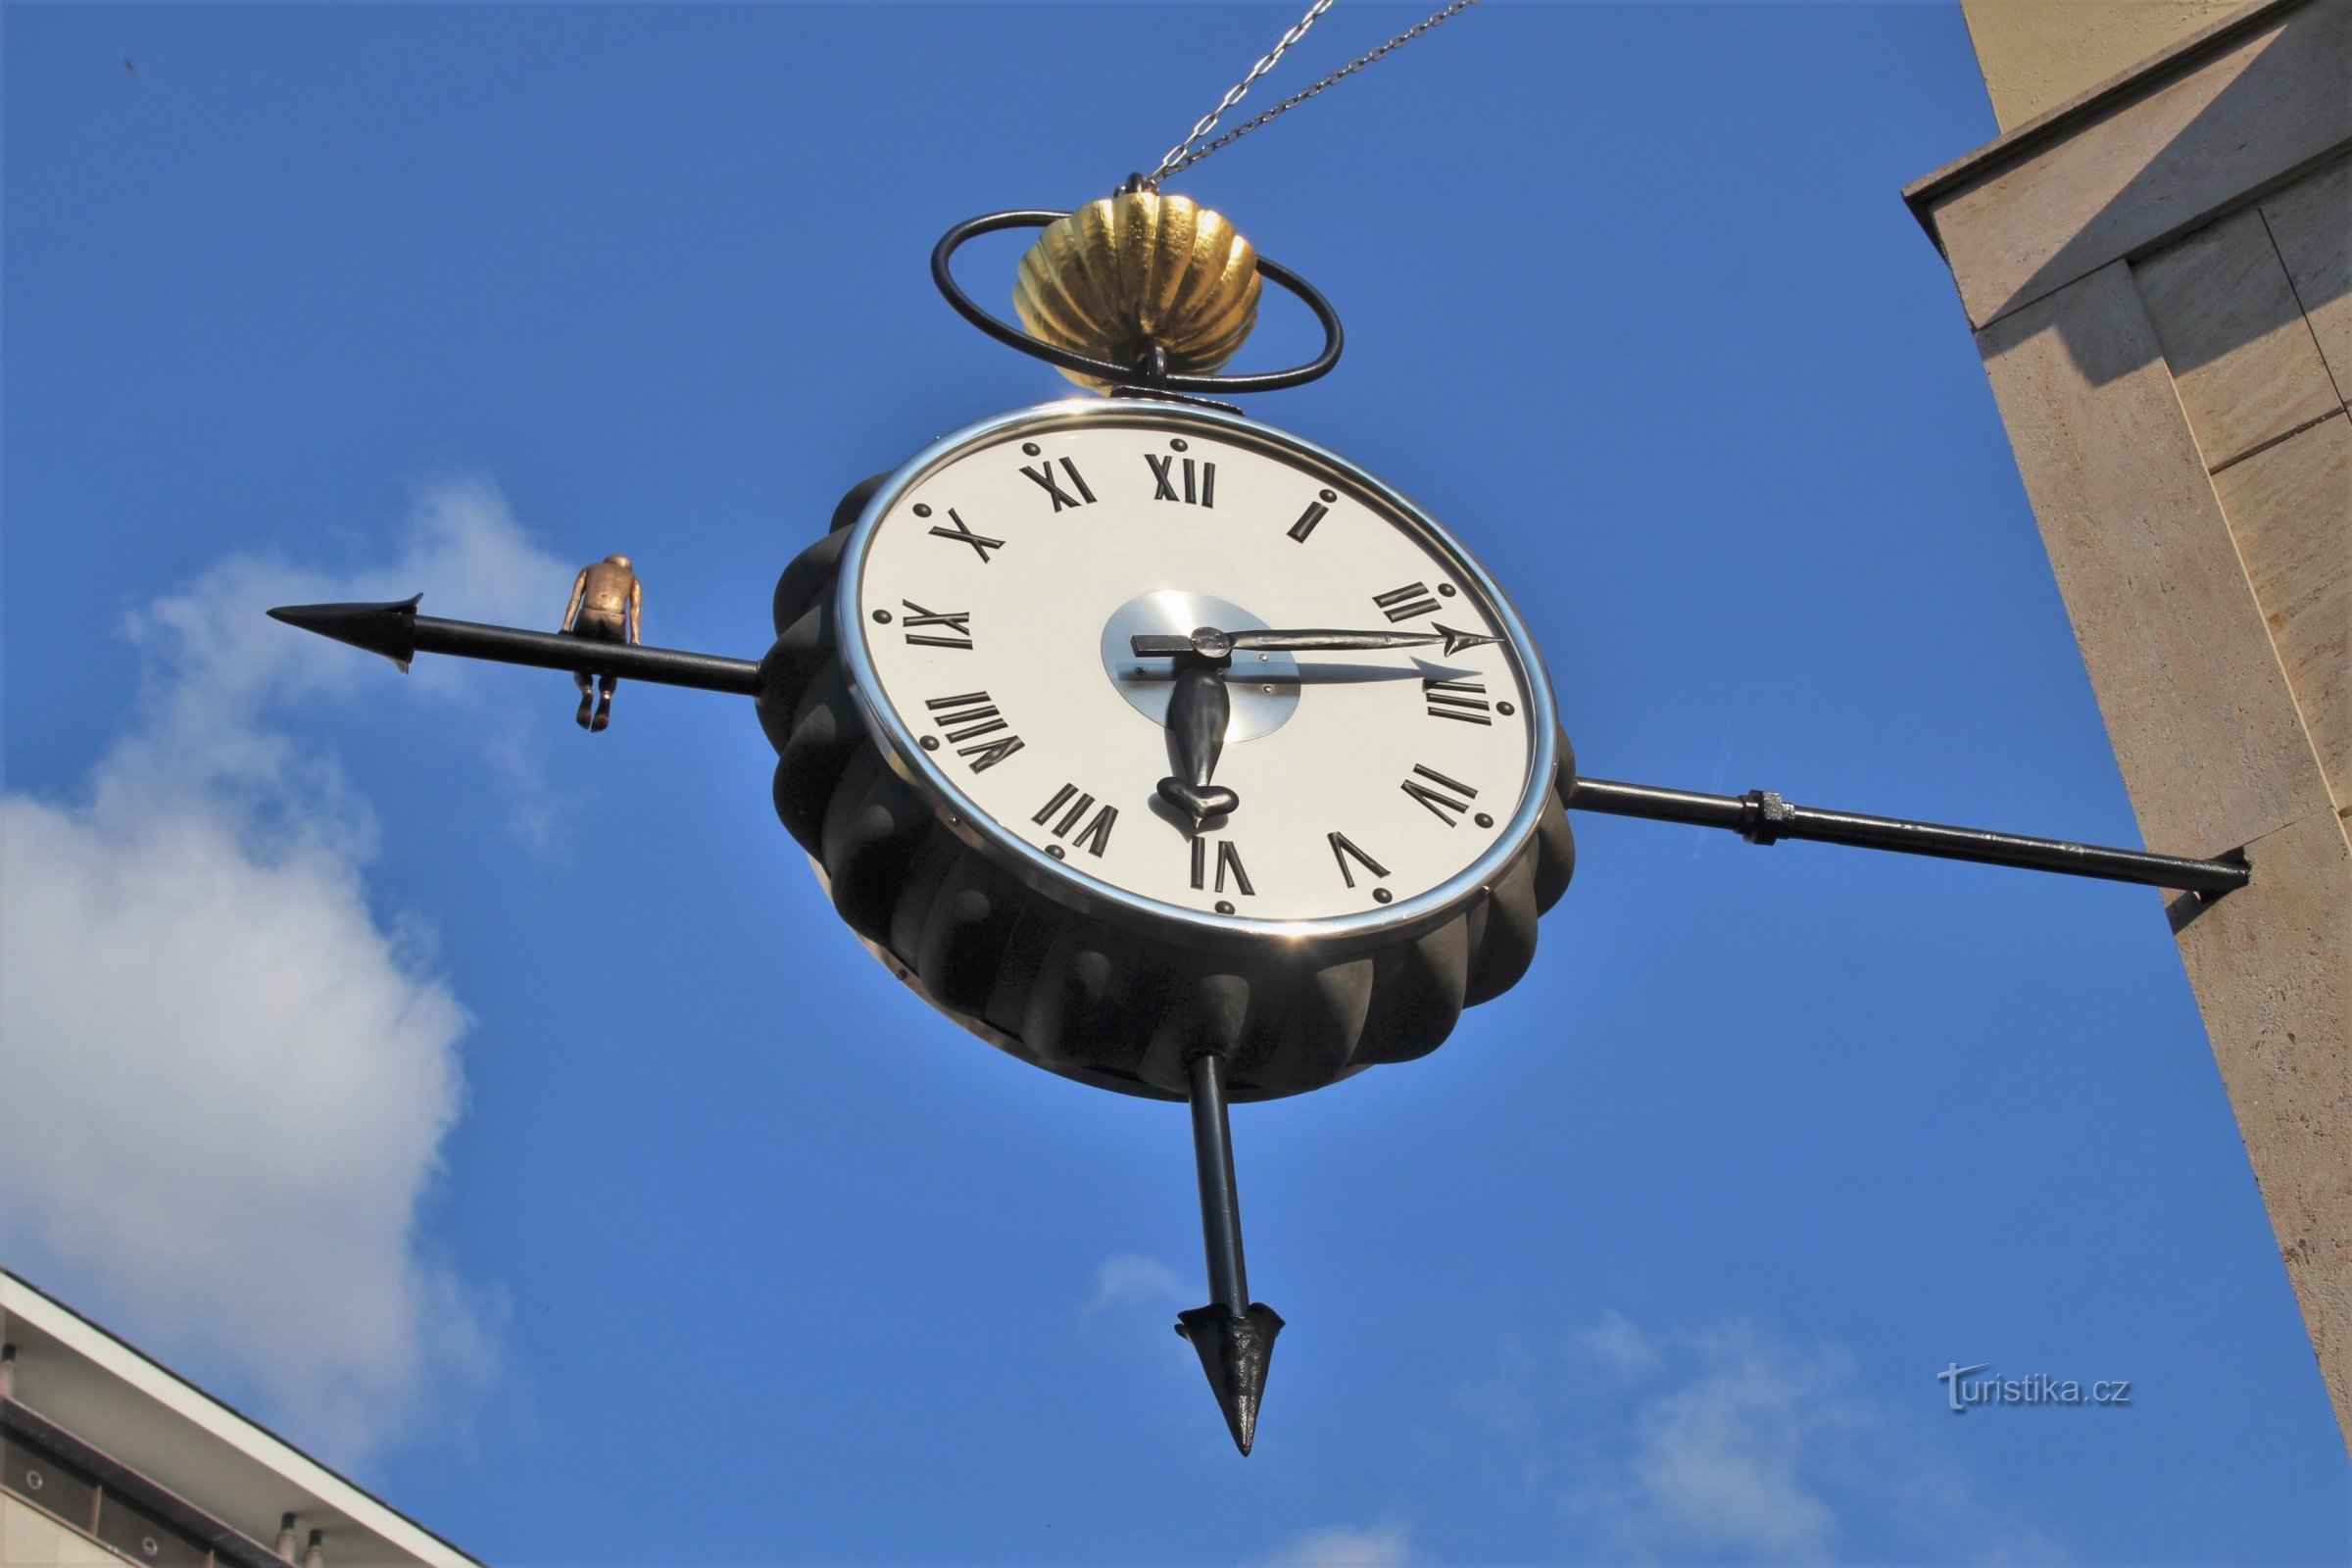 ブルノ - チェコ語の時計